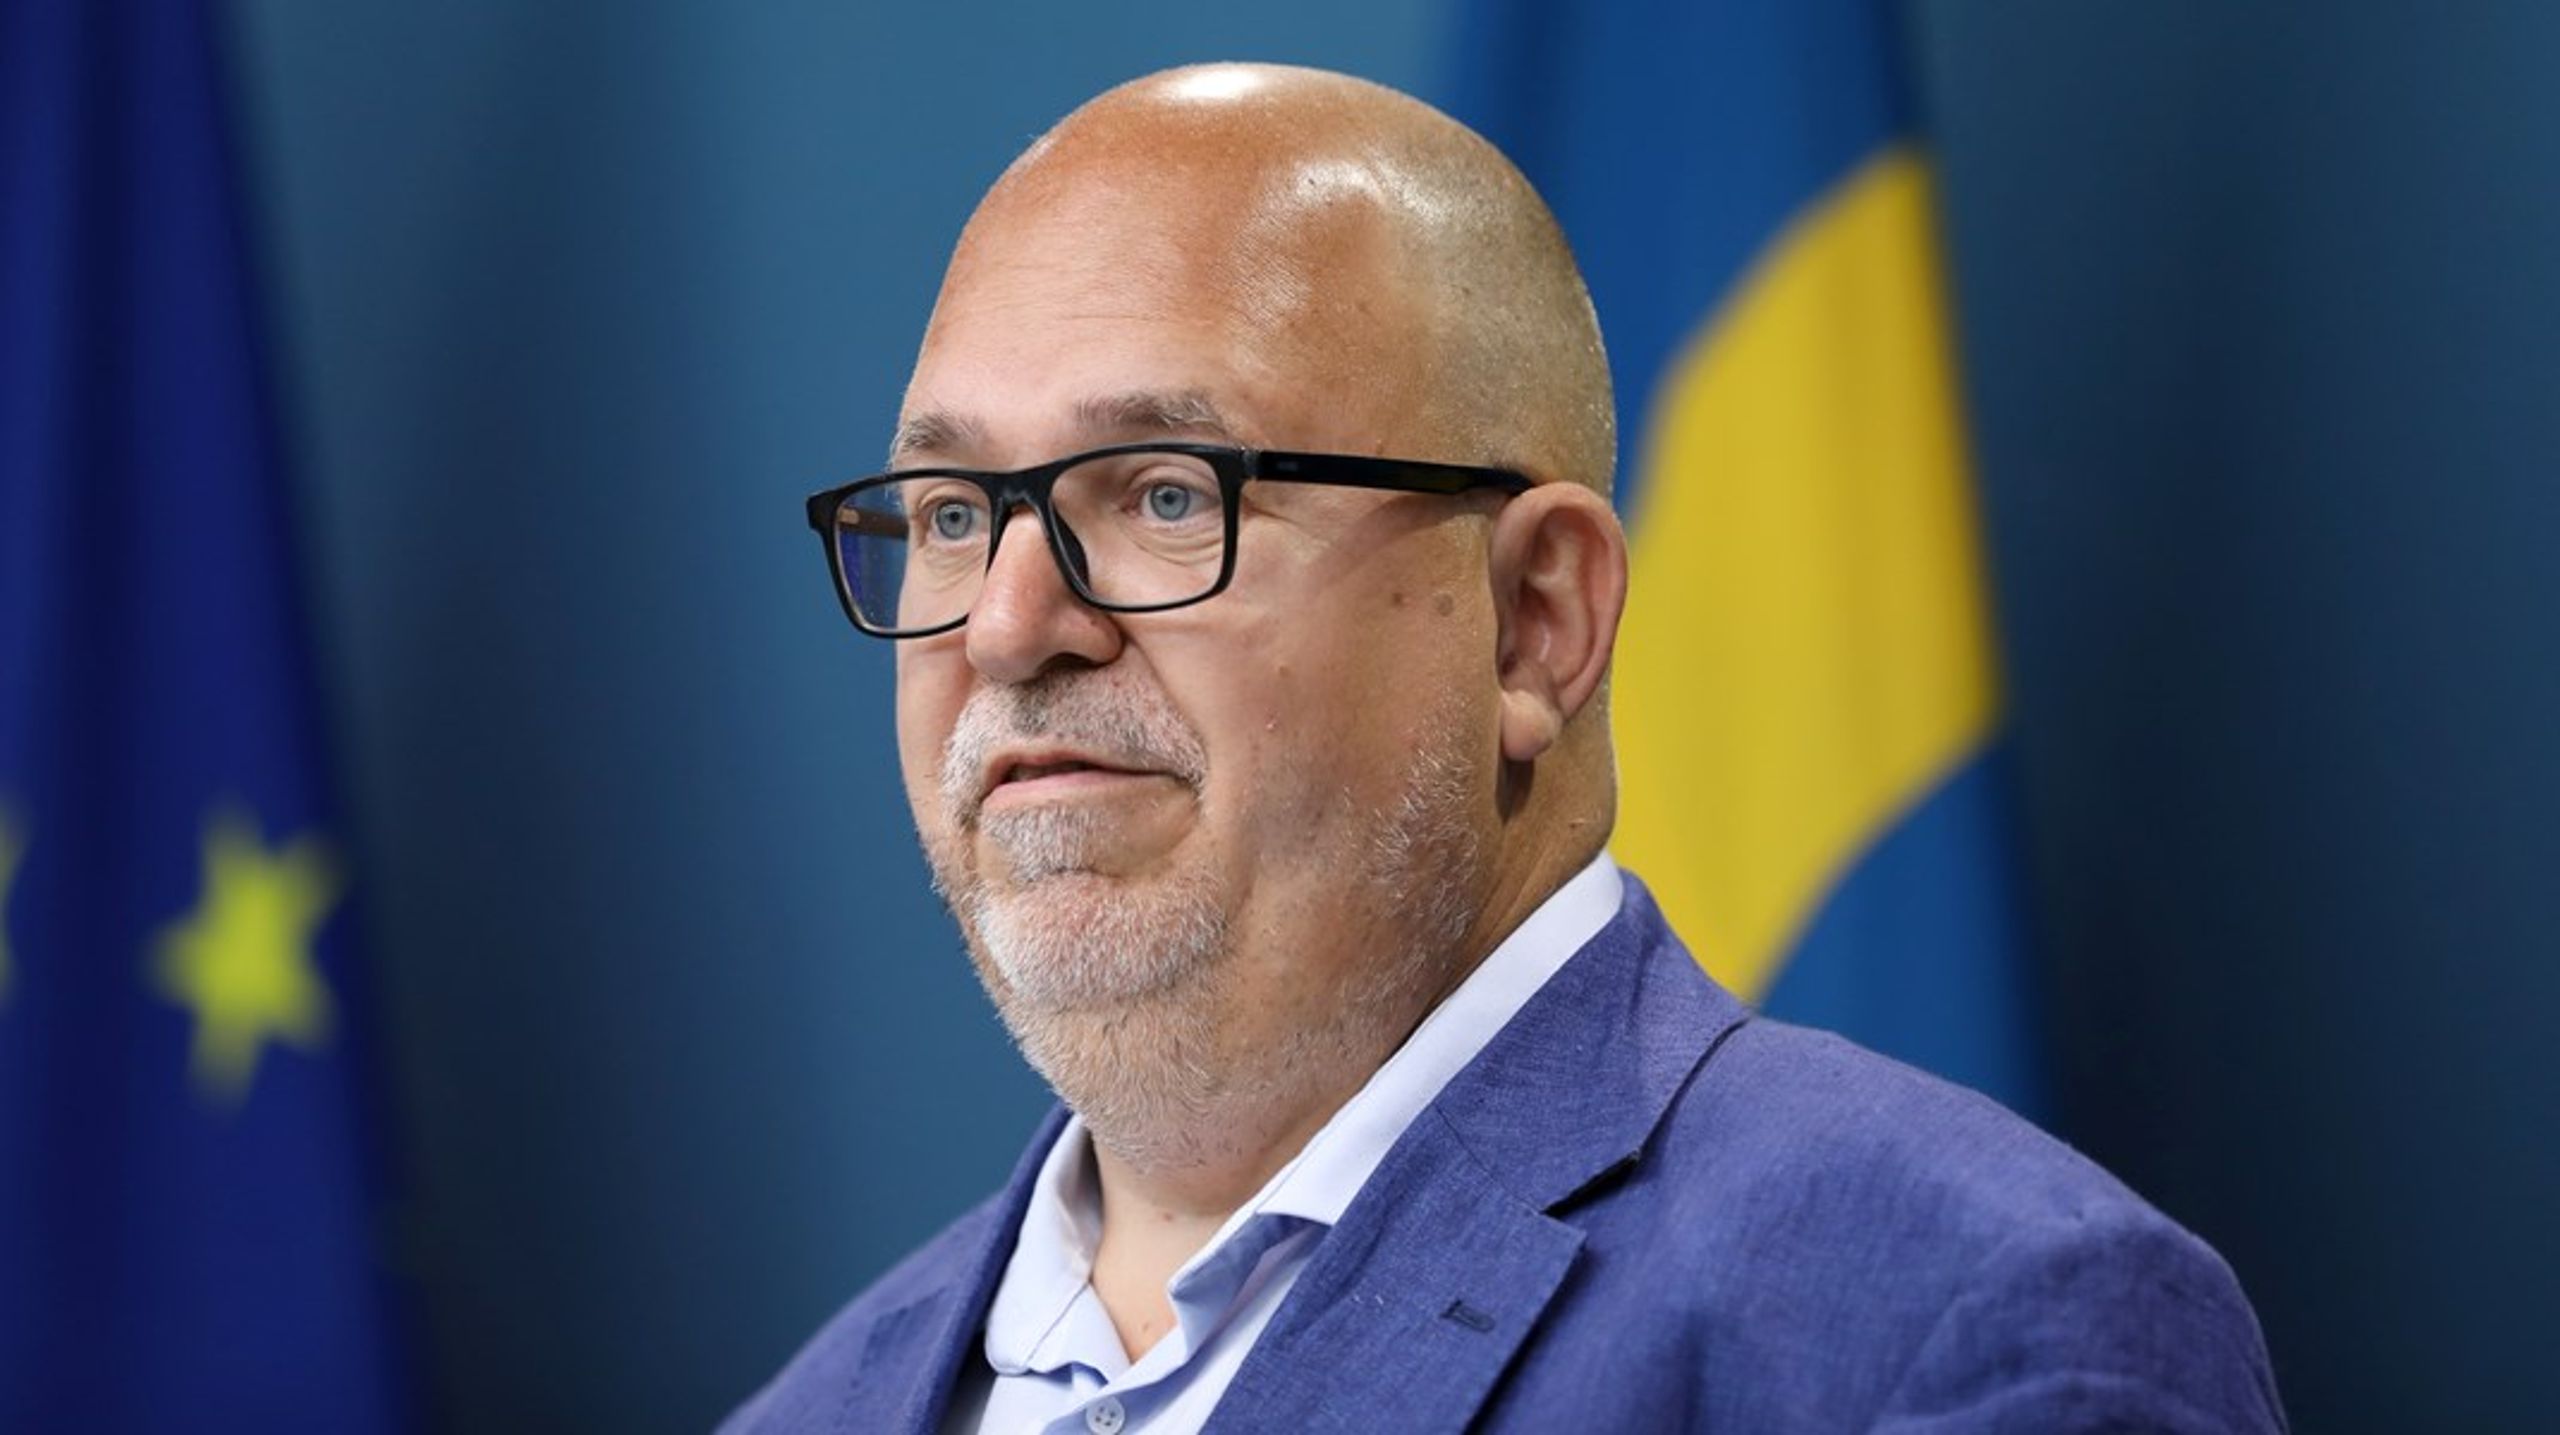 <div>Näringsminister Thorwaldsson (S) utser Pär Malmberg till utredare för ökad försörjningsberedskap för varor och tjänster från industrin. I uppdraget ingår att se över vilka fossila tillgångar som finns att utvinna i Sverige.</div>